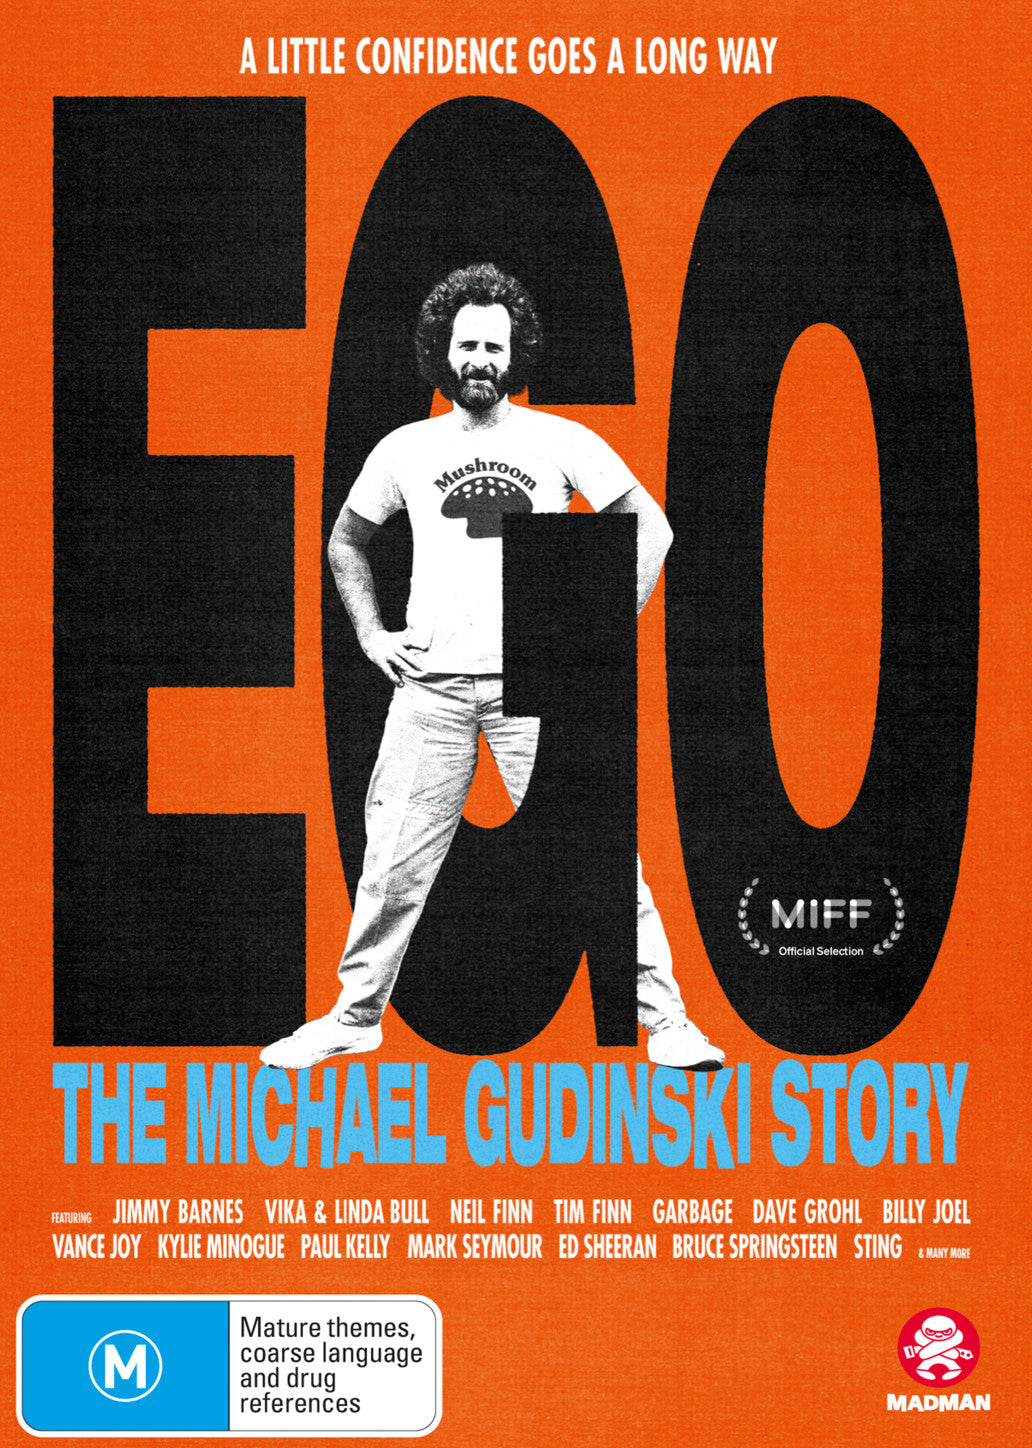 EGO: THE MICHAEL GUDINSKI STORY